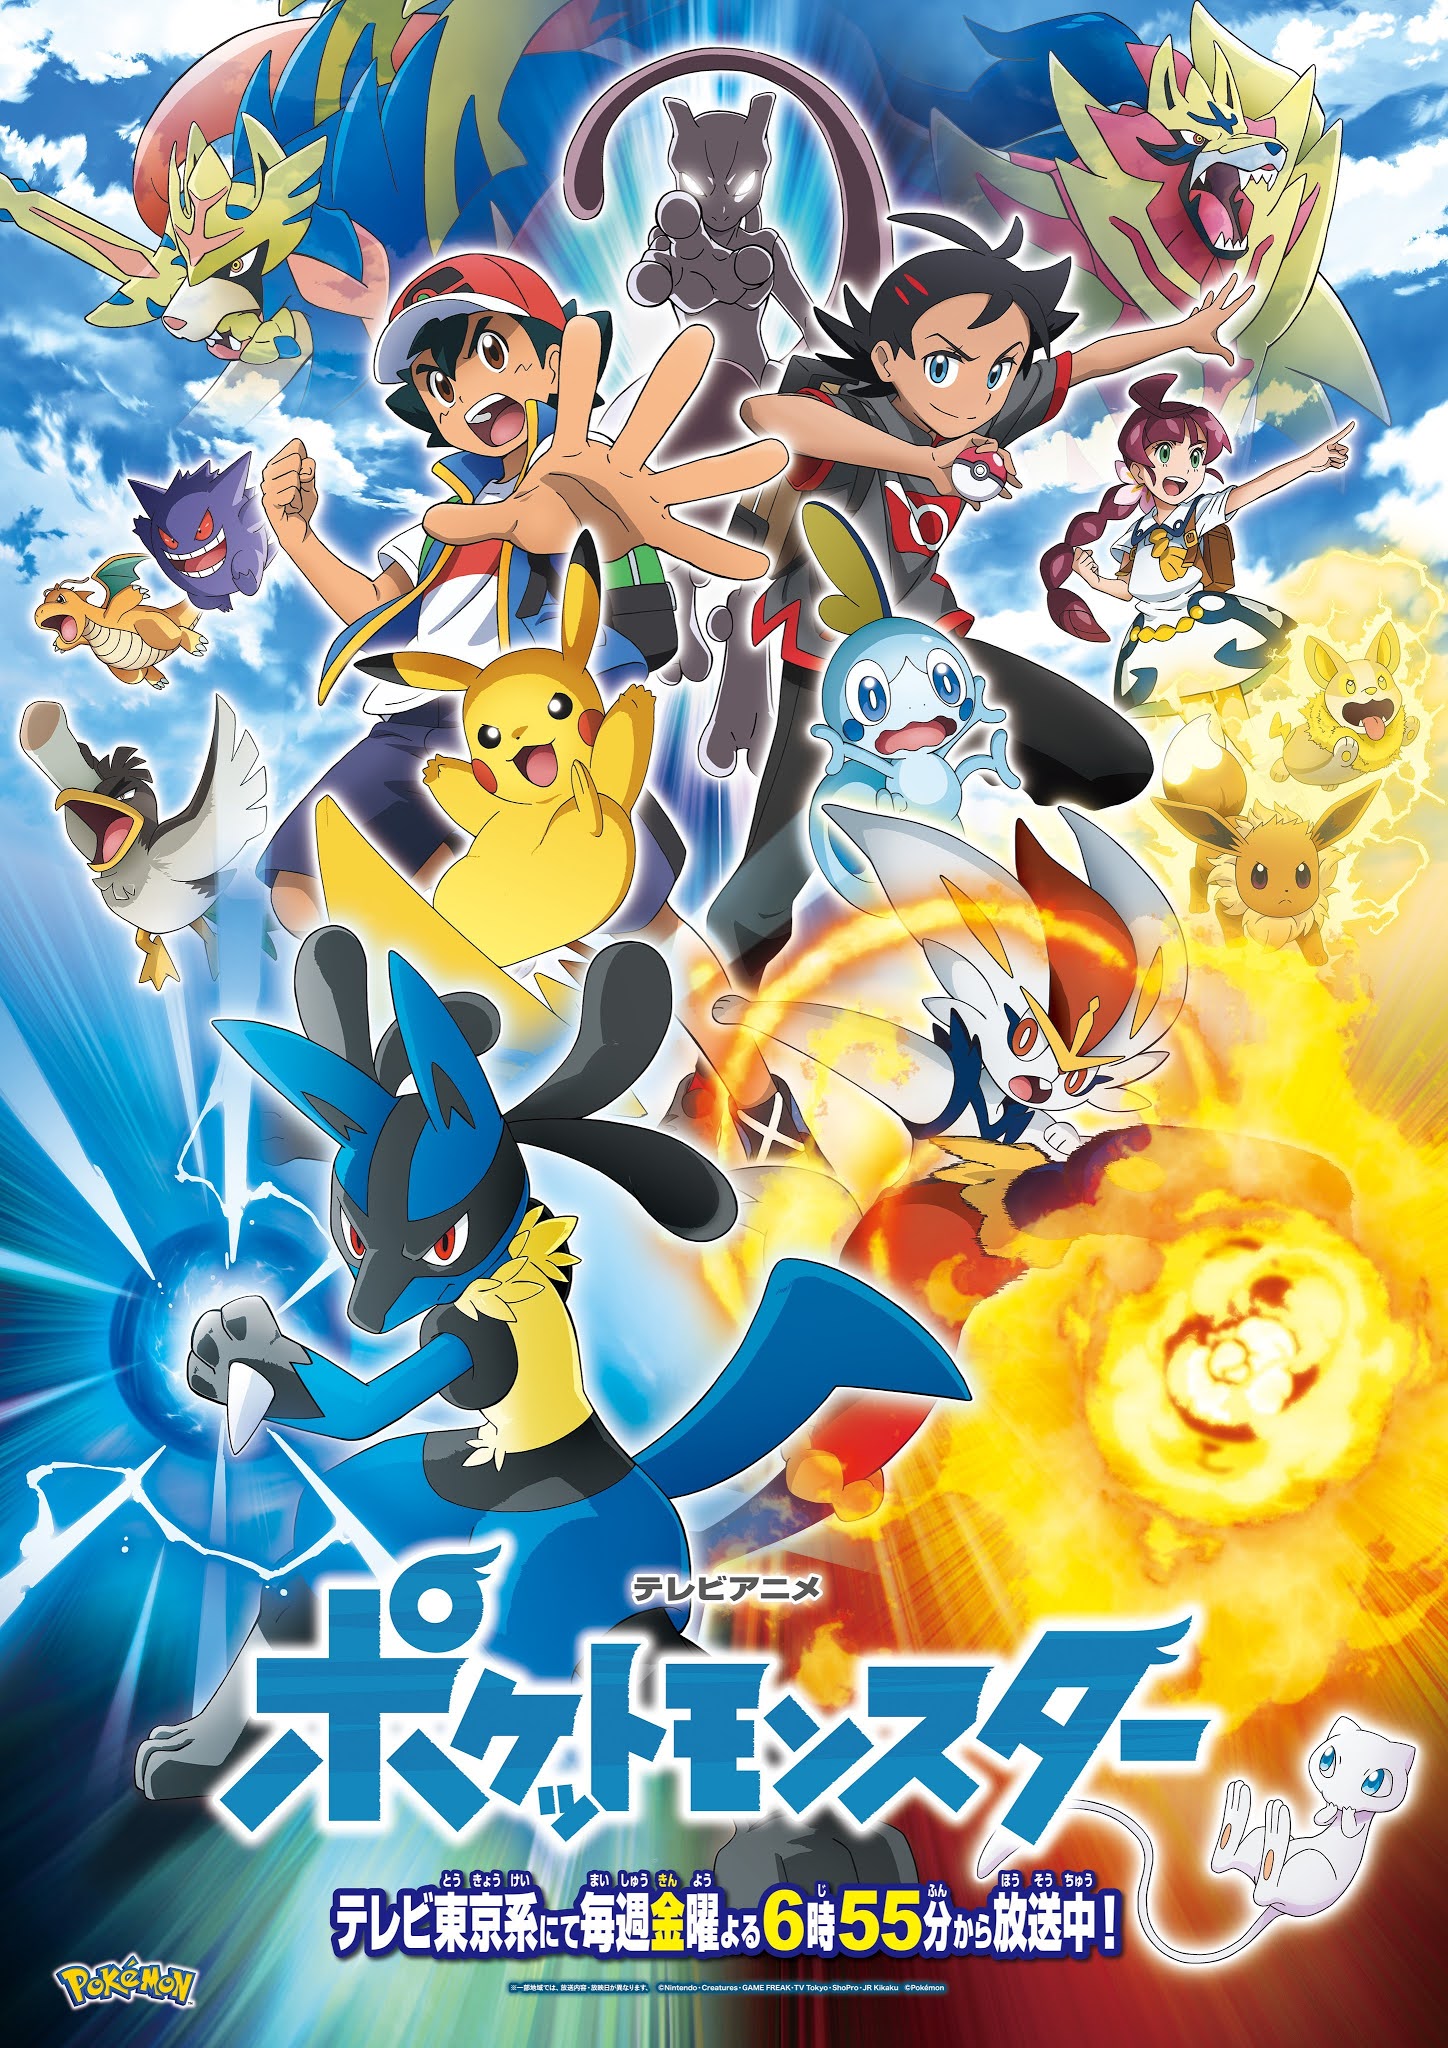 Novos Títulos de Episódios do Anime Pokémon Horizontes